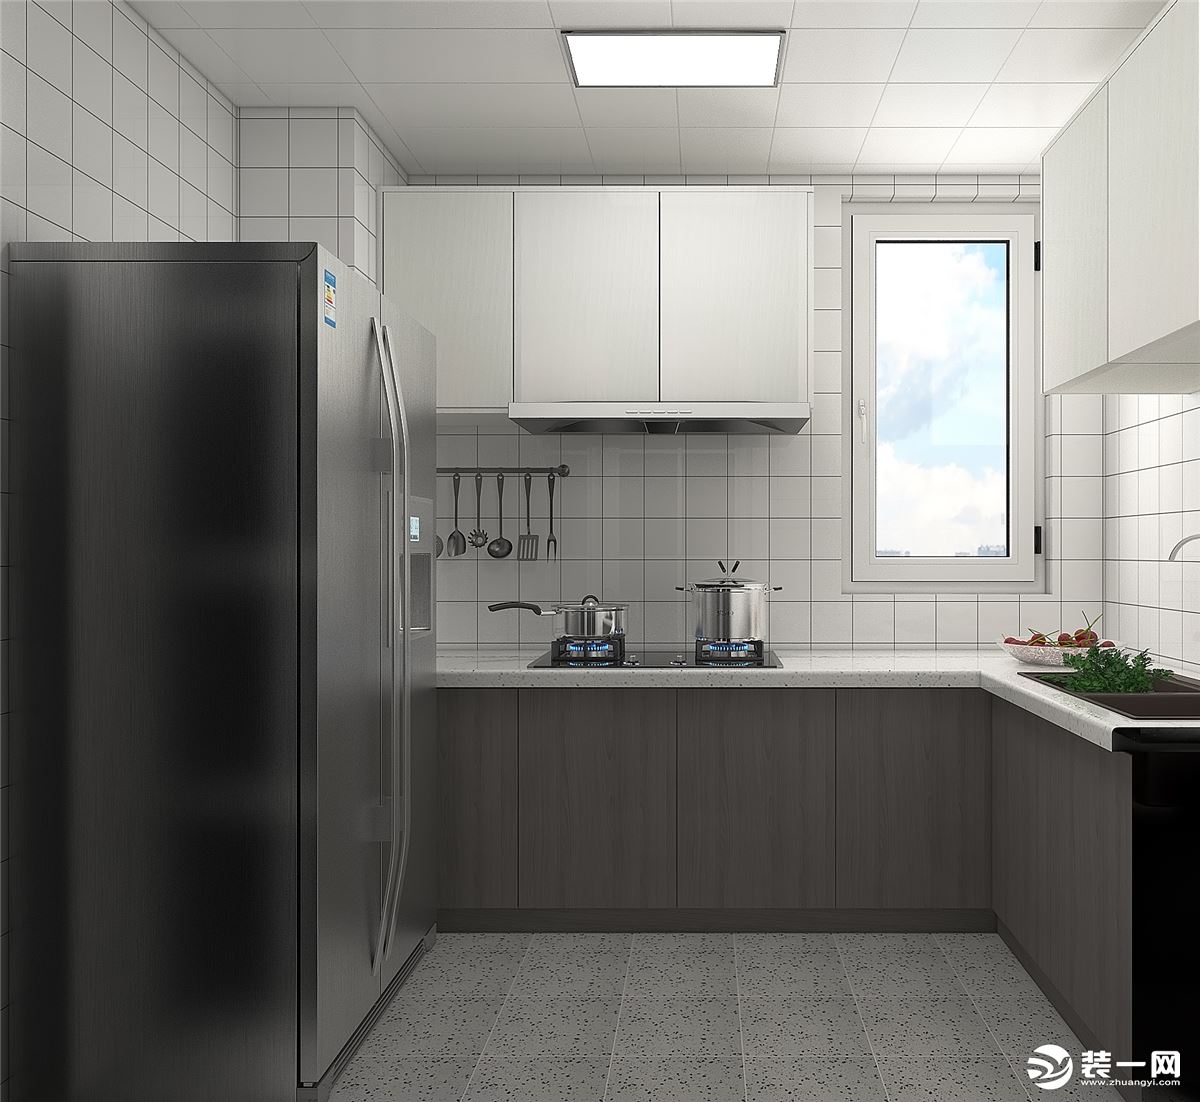 地柜采用阿拉斯加橡木和吊柜采用雪松白，由于厨房空间采光不太好，所以白色方格砖，使整体空间明亮通透。